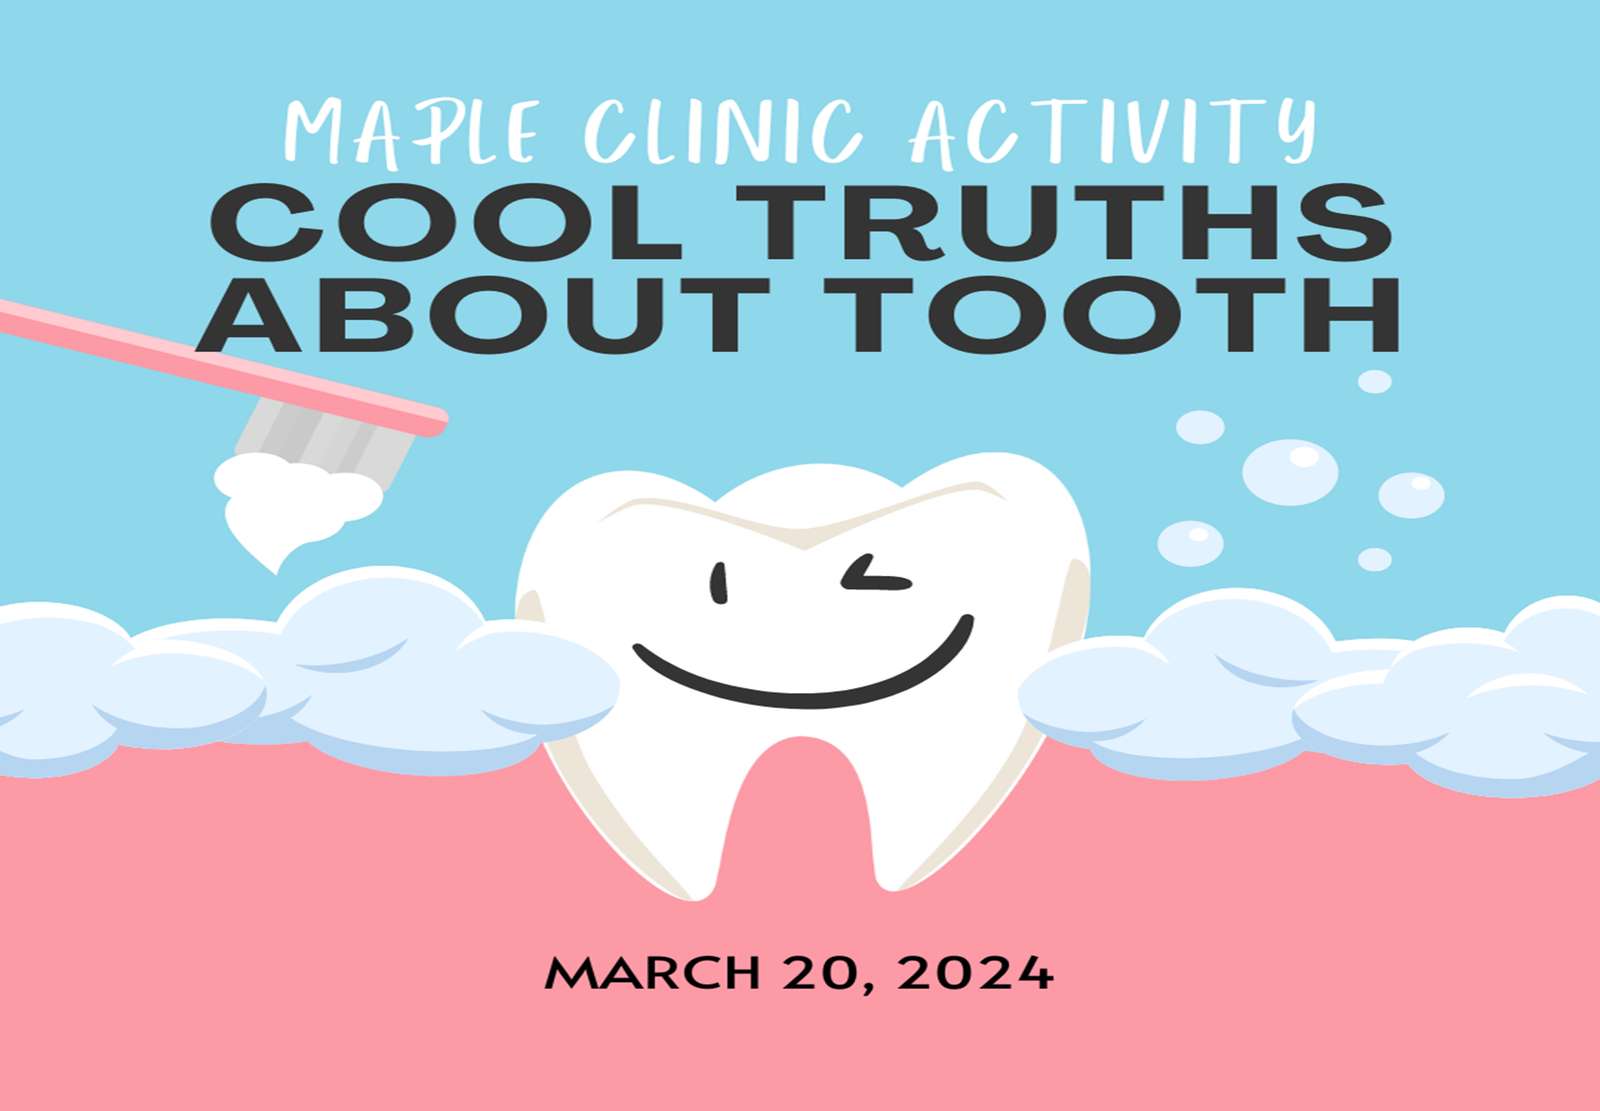 Atividade da Maple Clinic Verdades interessantes sobre os dentes puzzle online a partir de fotografia